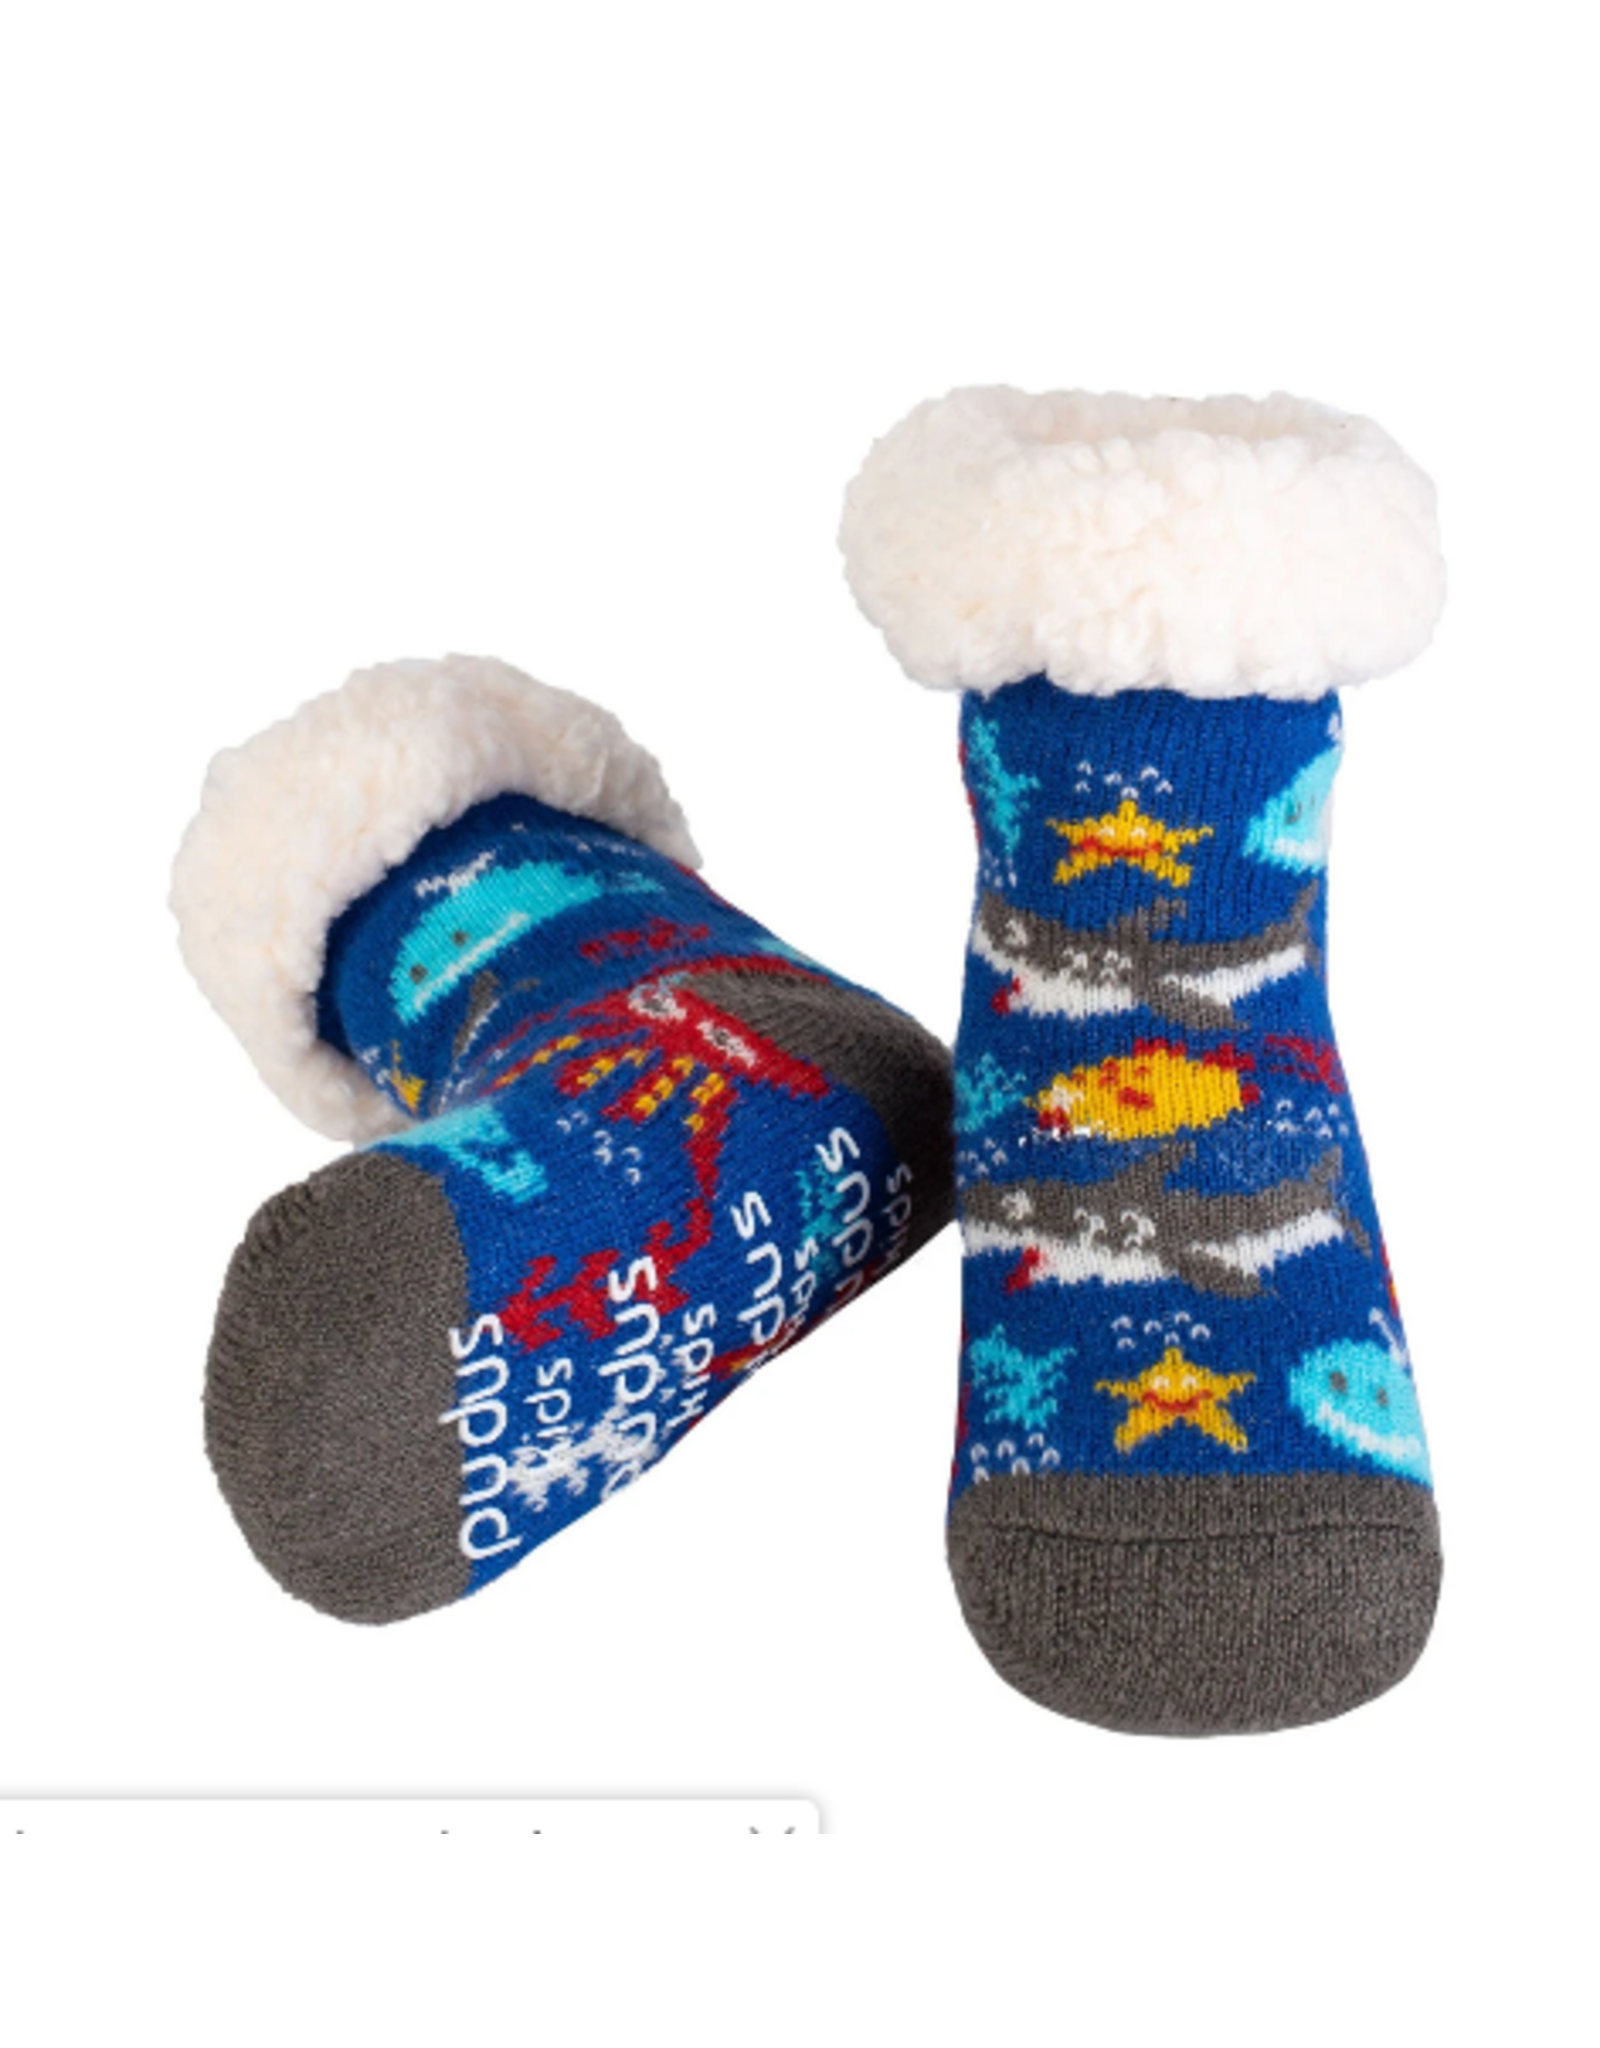 Pudus Toddler Classic Slipper Socks- Shark Multi